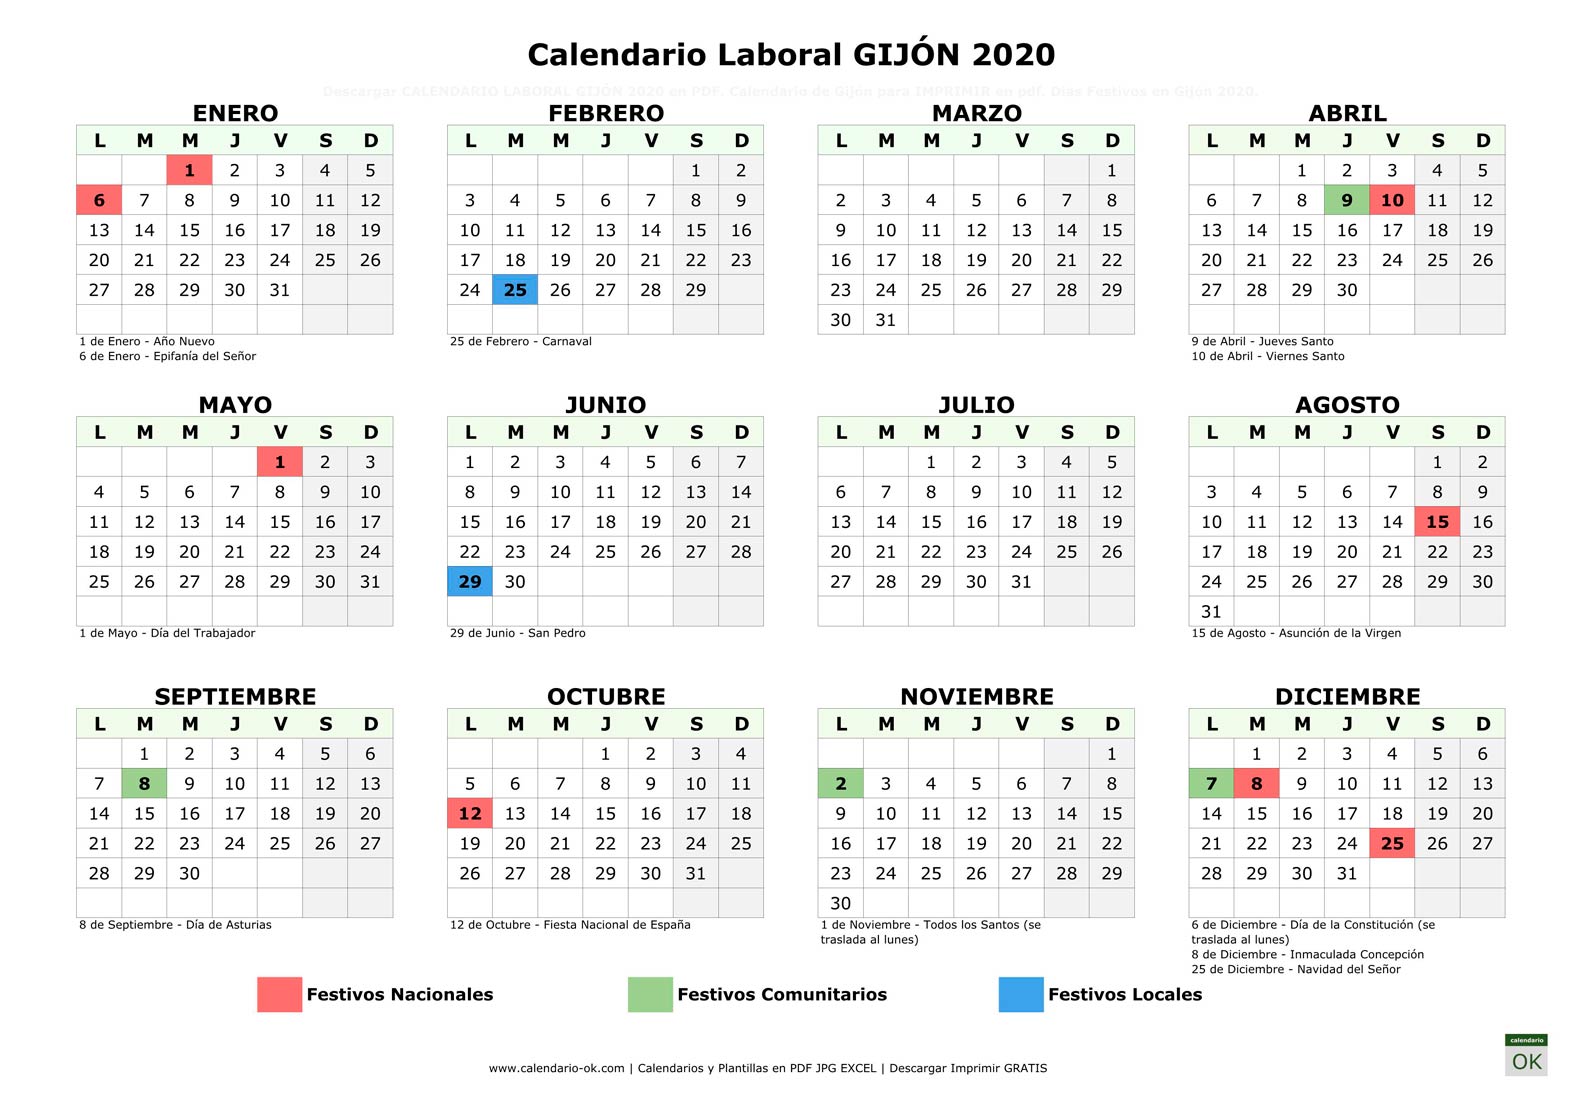 Calendario Laboral GIJÓN 2020 horizontal